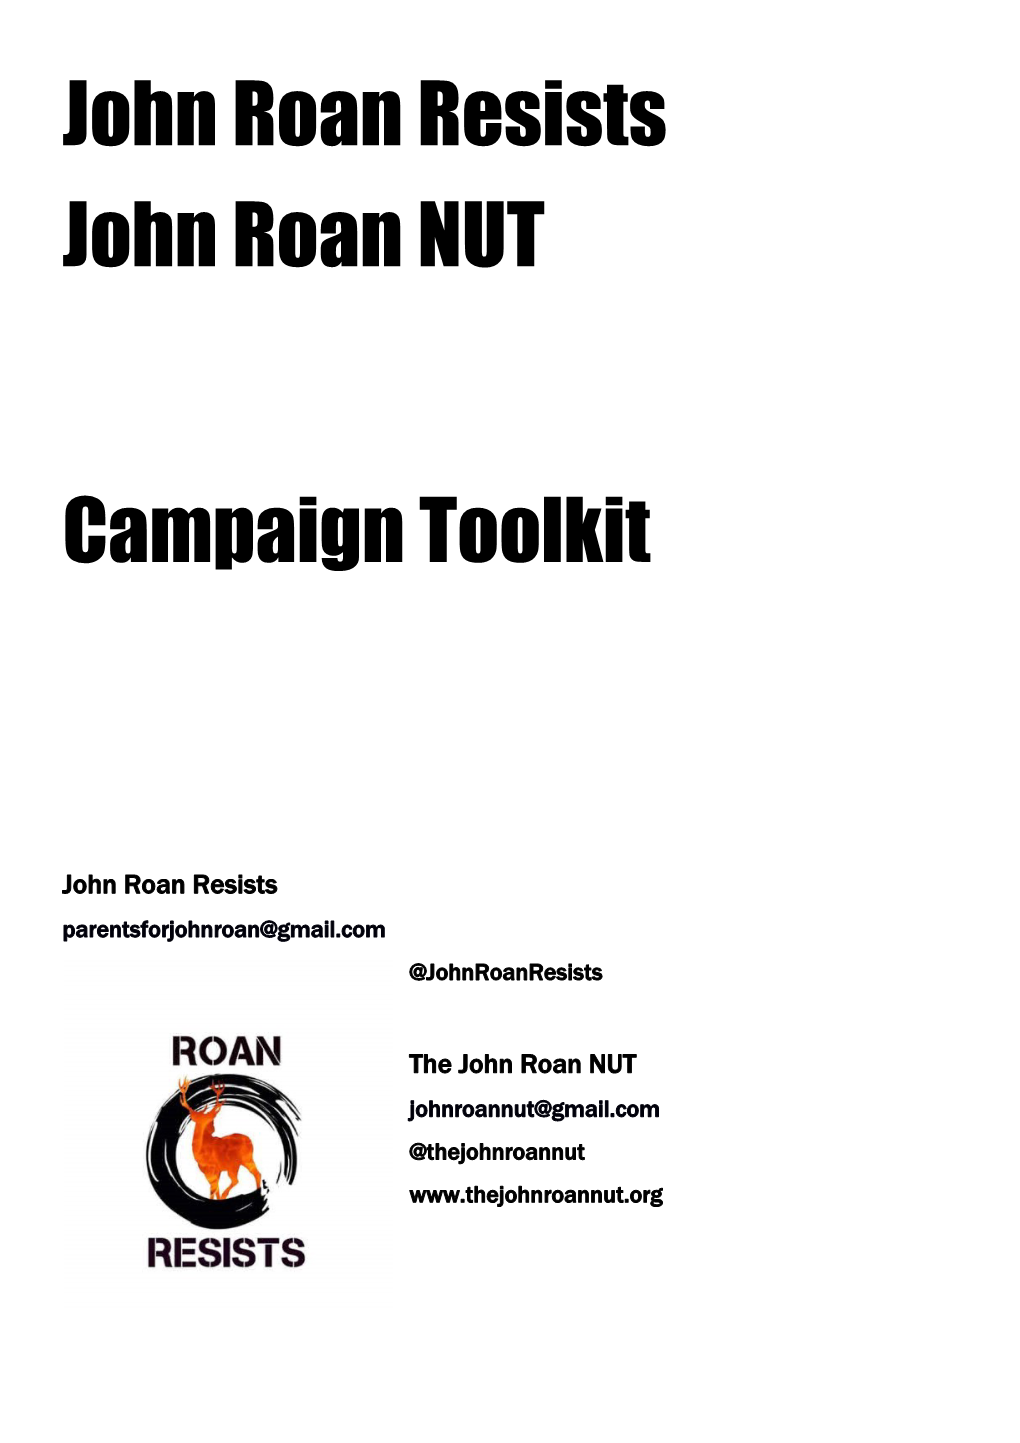 The John Roan NUT